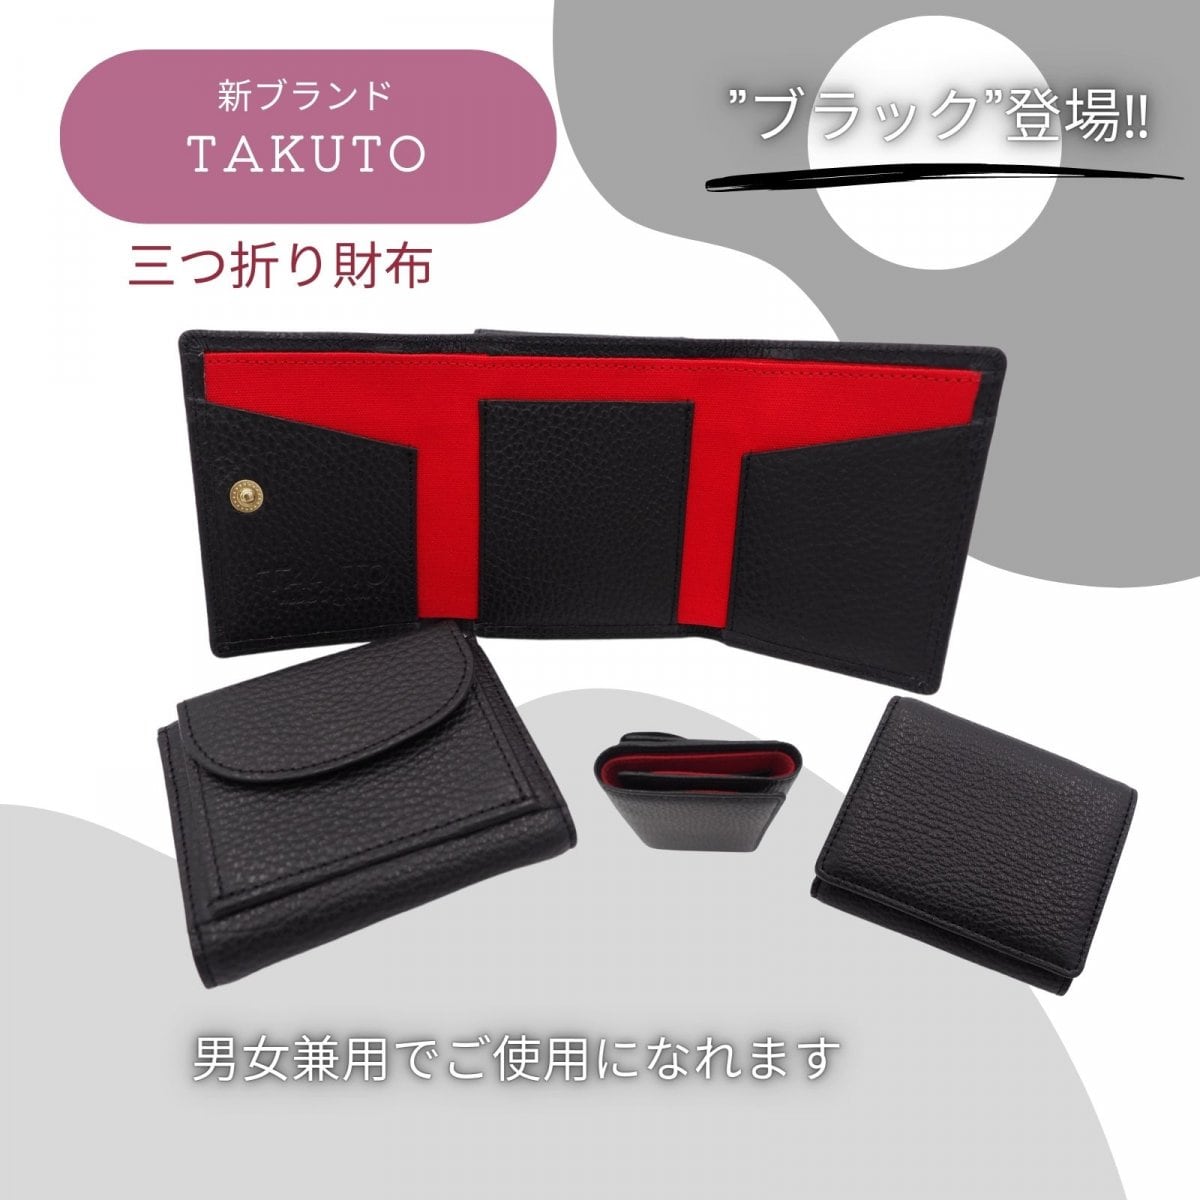 財布/新ブランド【TAKUTO】販売記念★ポイント2倍